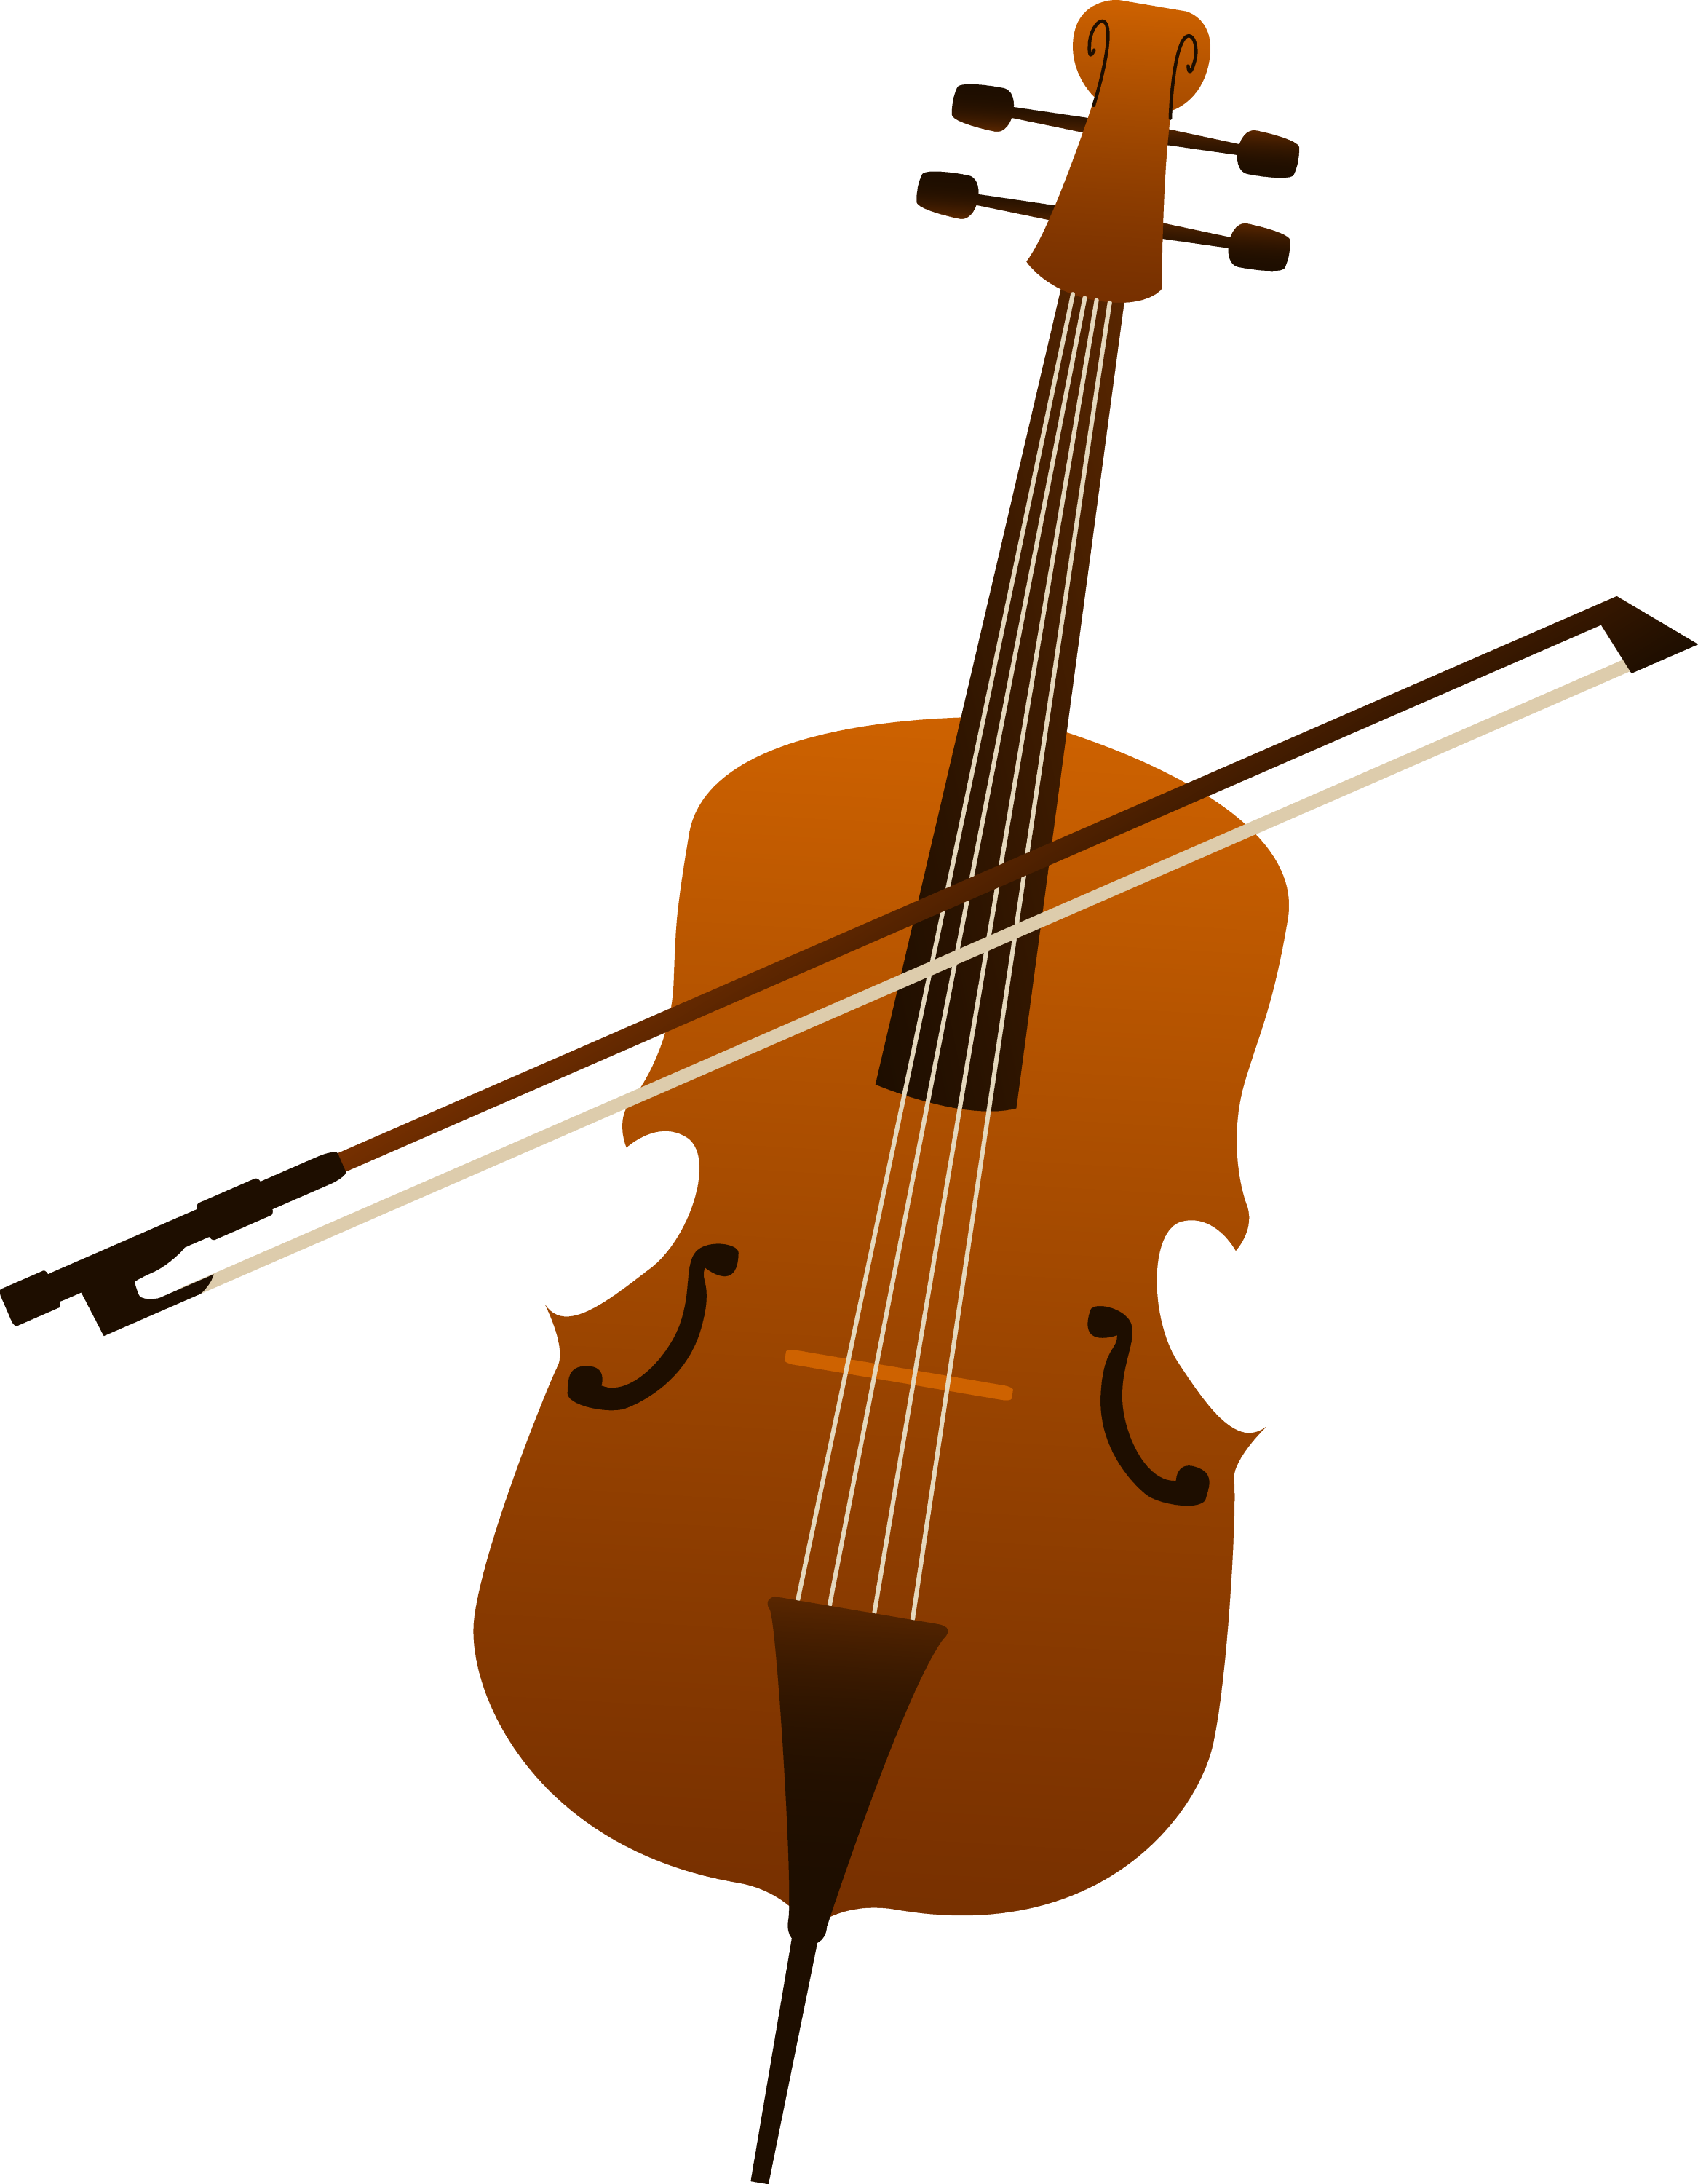 Elegant Cello Design - Free Clip Art